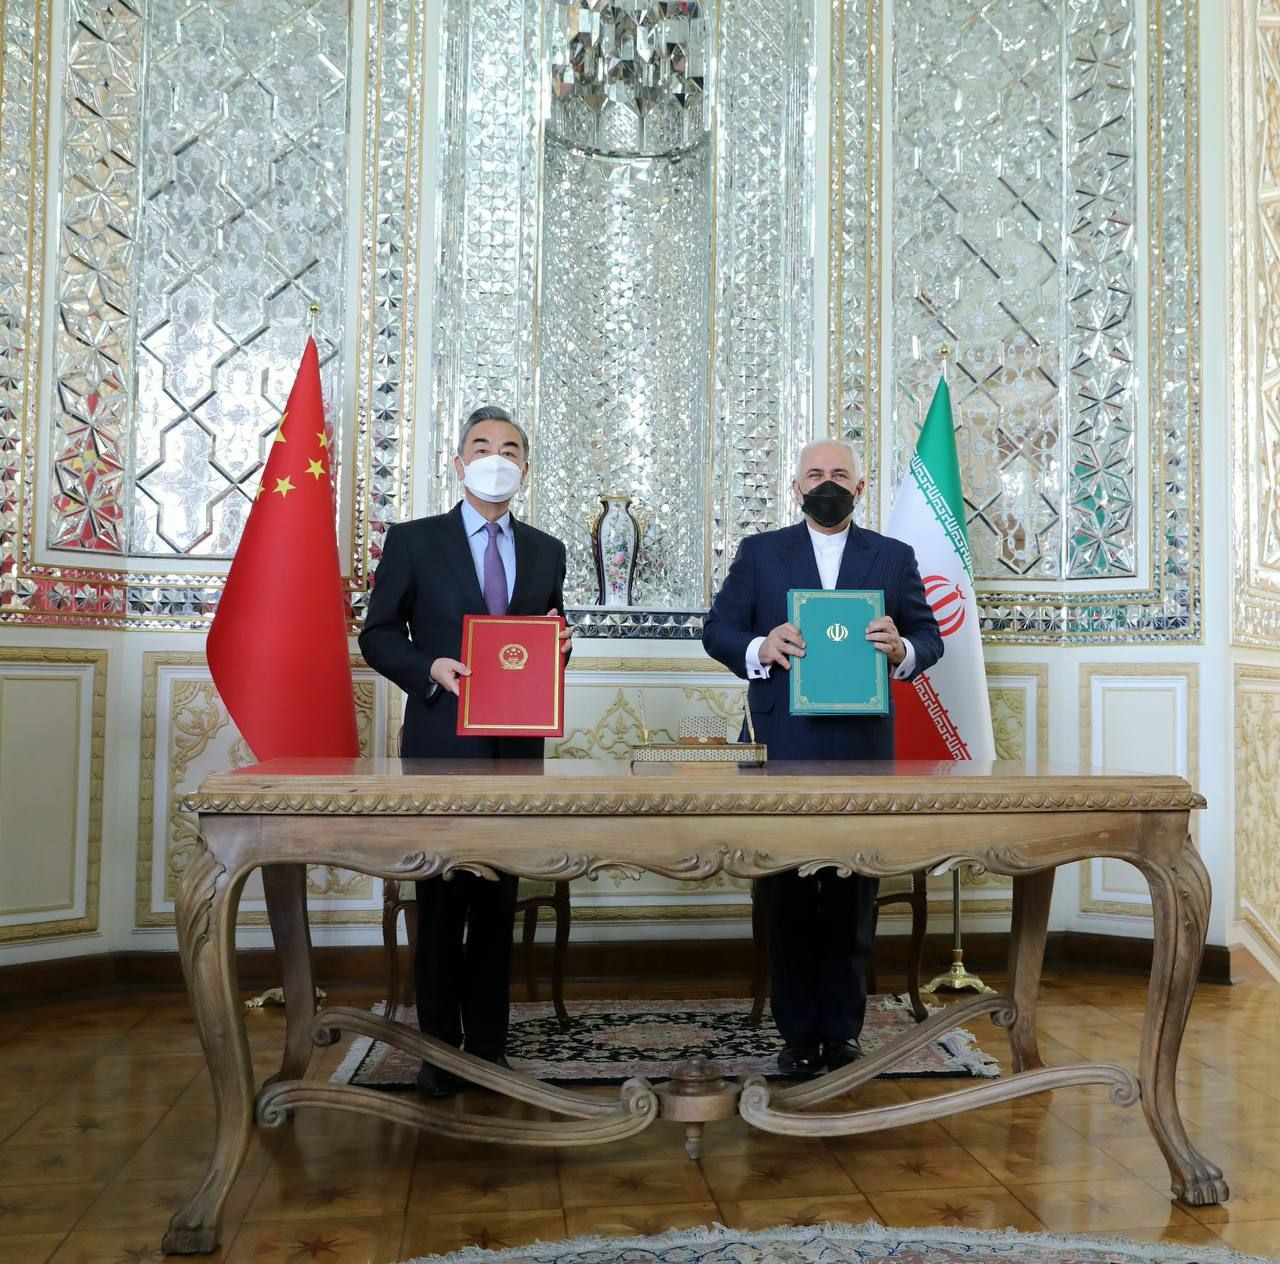 نیویورک تایمز: سند همکاری ایران و چین بستری برای سرمایه گذاری سنگین پکن در ایران است